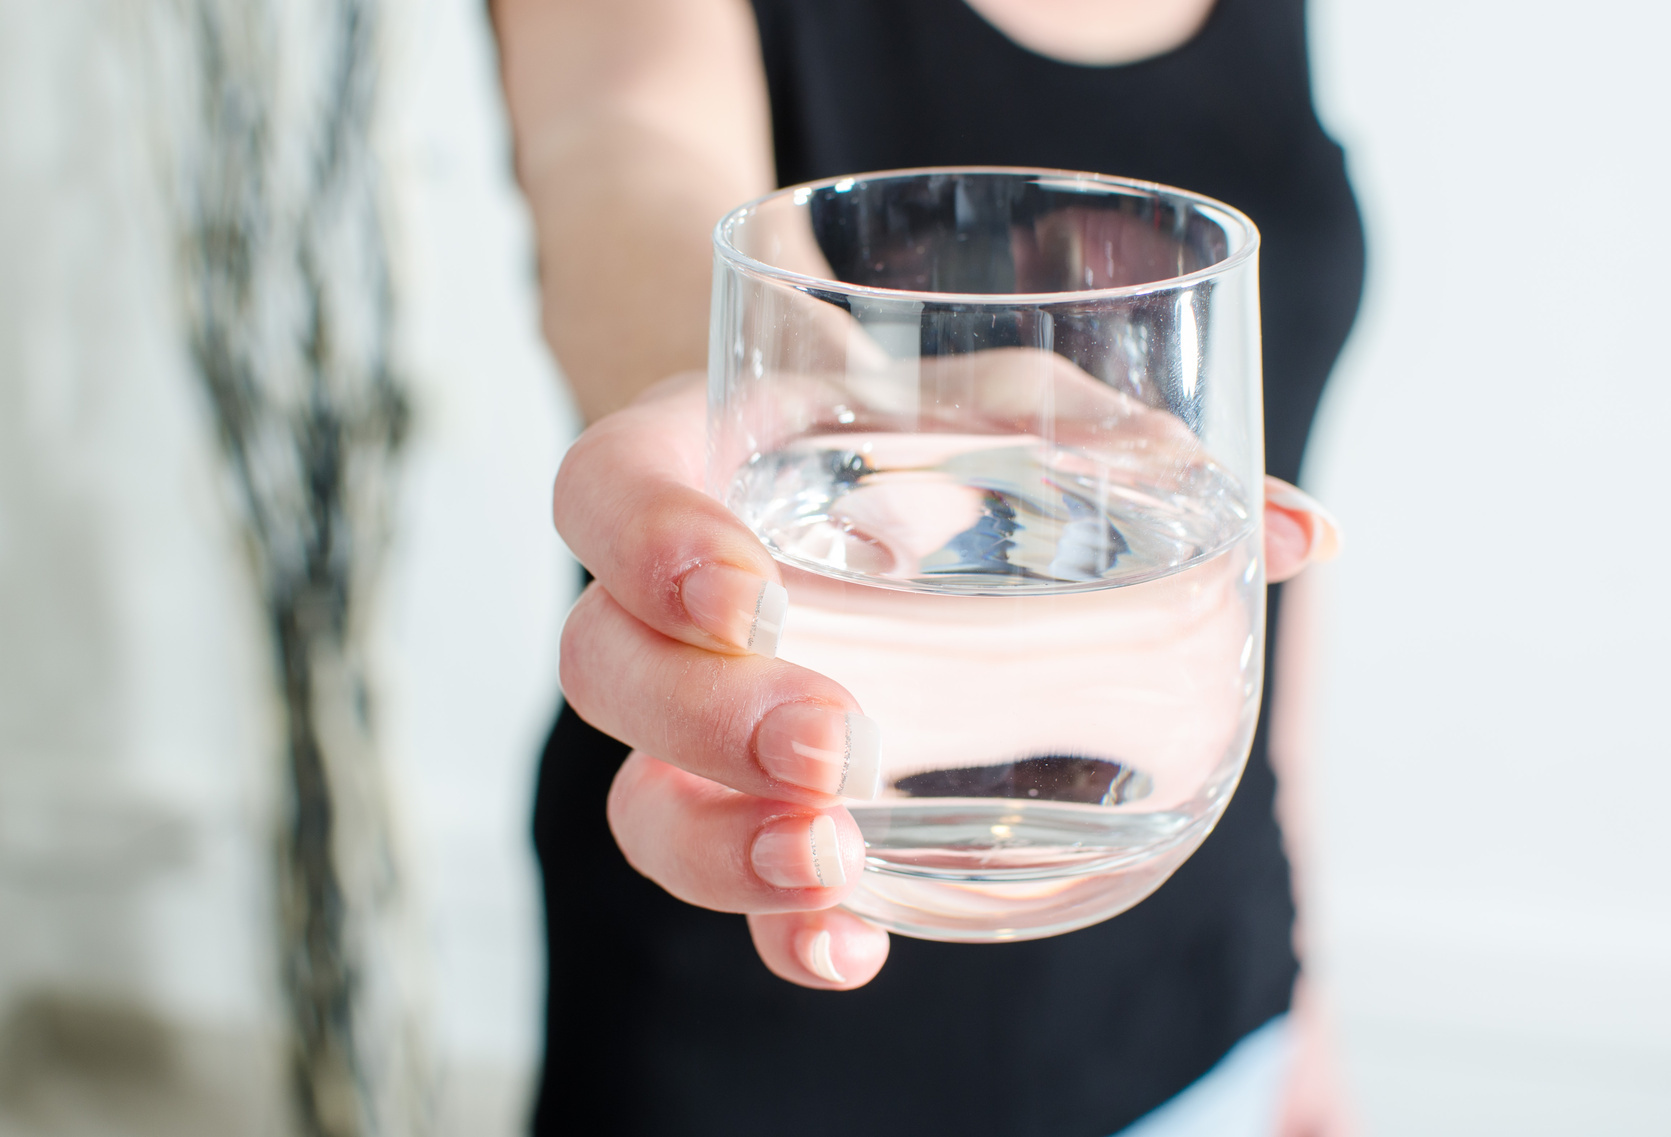 Вот так: врач назвала привычку пить воду и другие напитки на ходу — вредной для здоровья